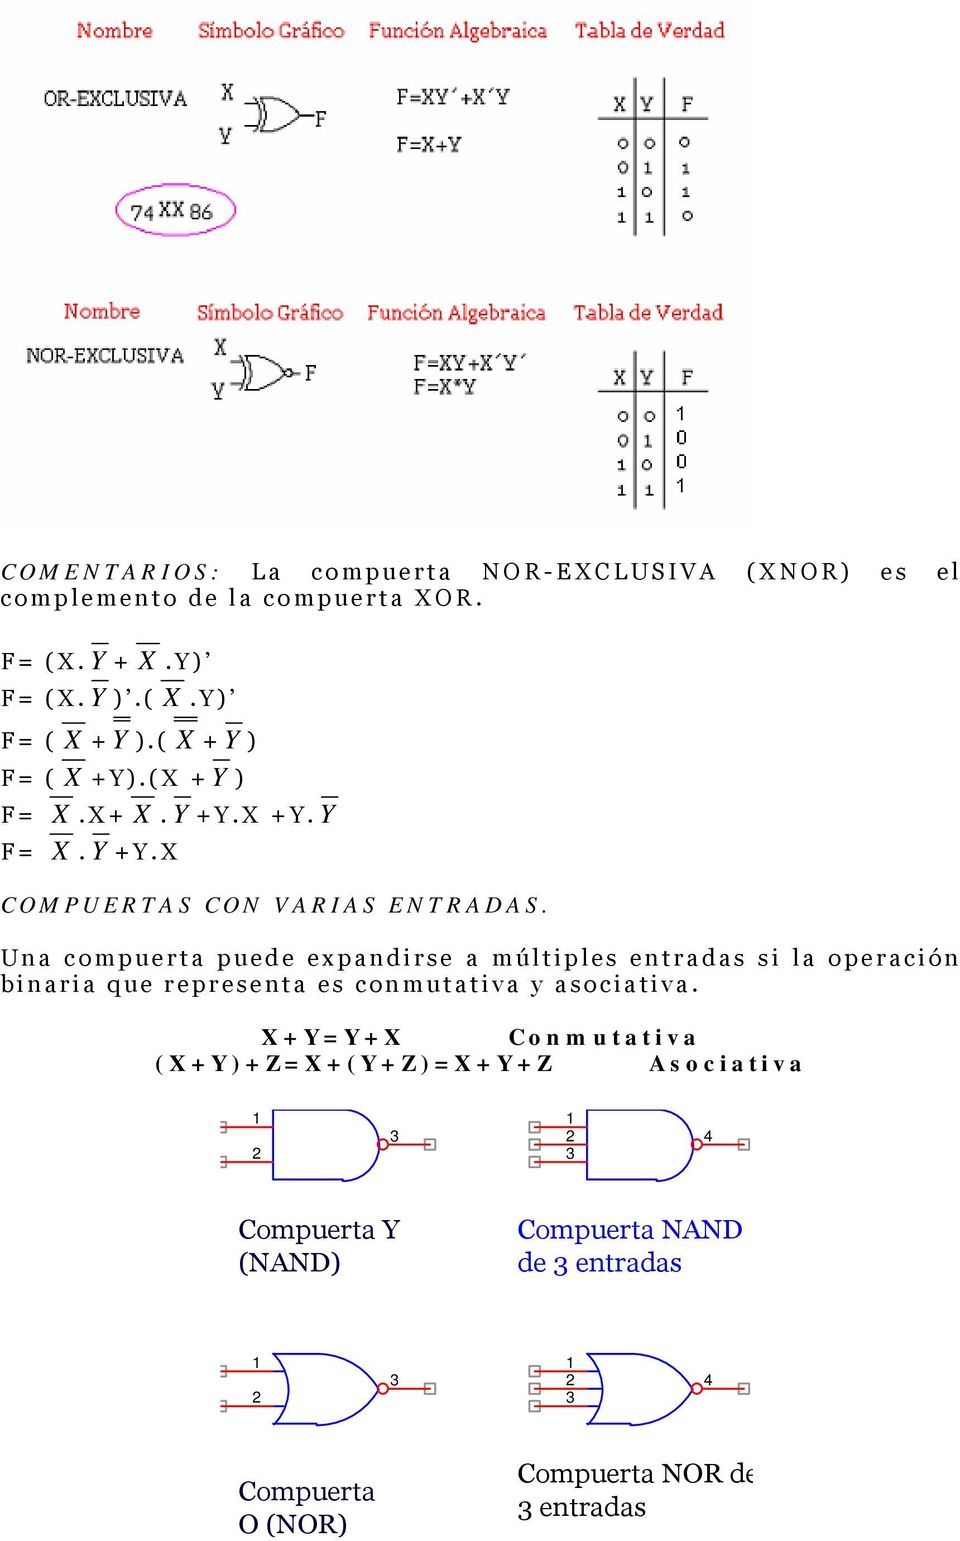 Una compuerta puede expandirse a múltiples entradas si la operación binaria que representa es conmutativa y asociativa.